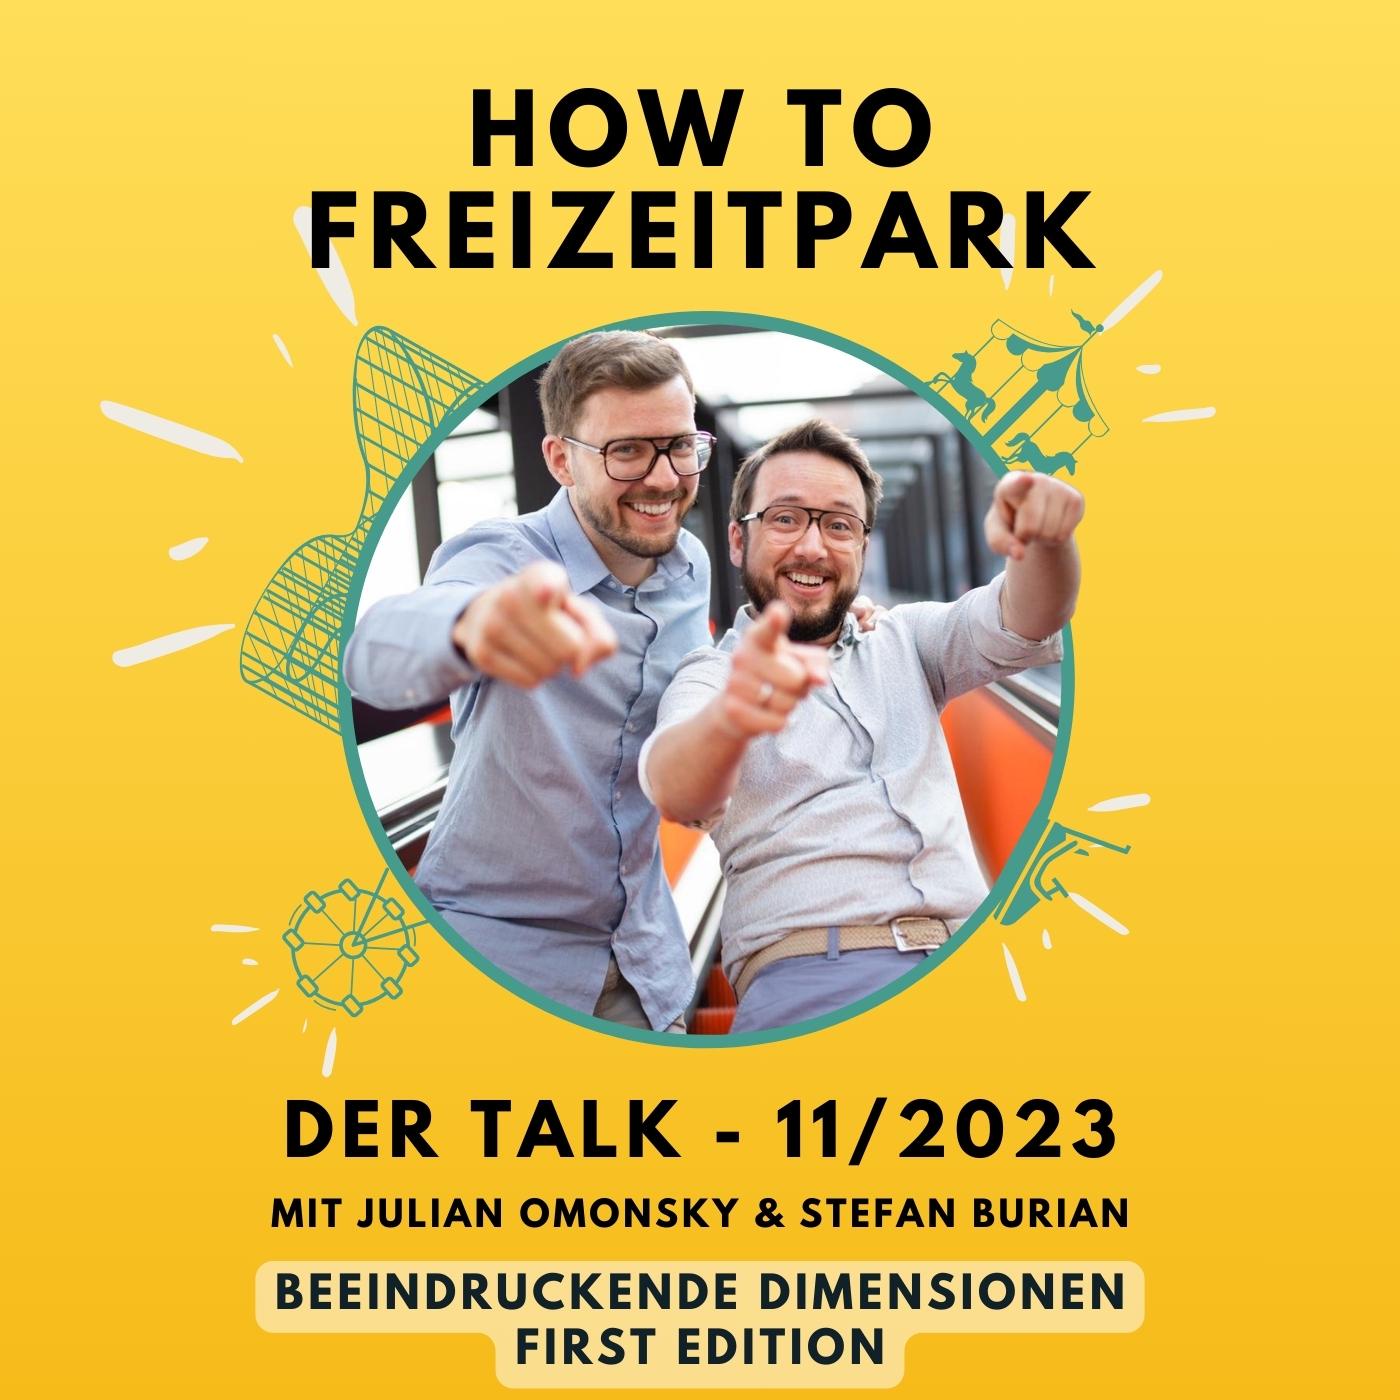 Der Talk - 11/2023 - Beeindruckende Dimensionen - First Edition